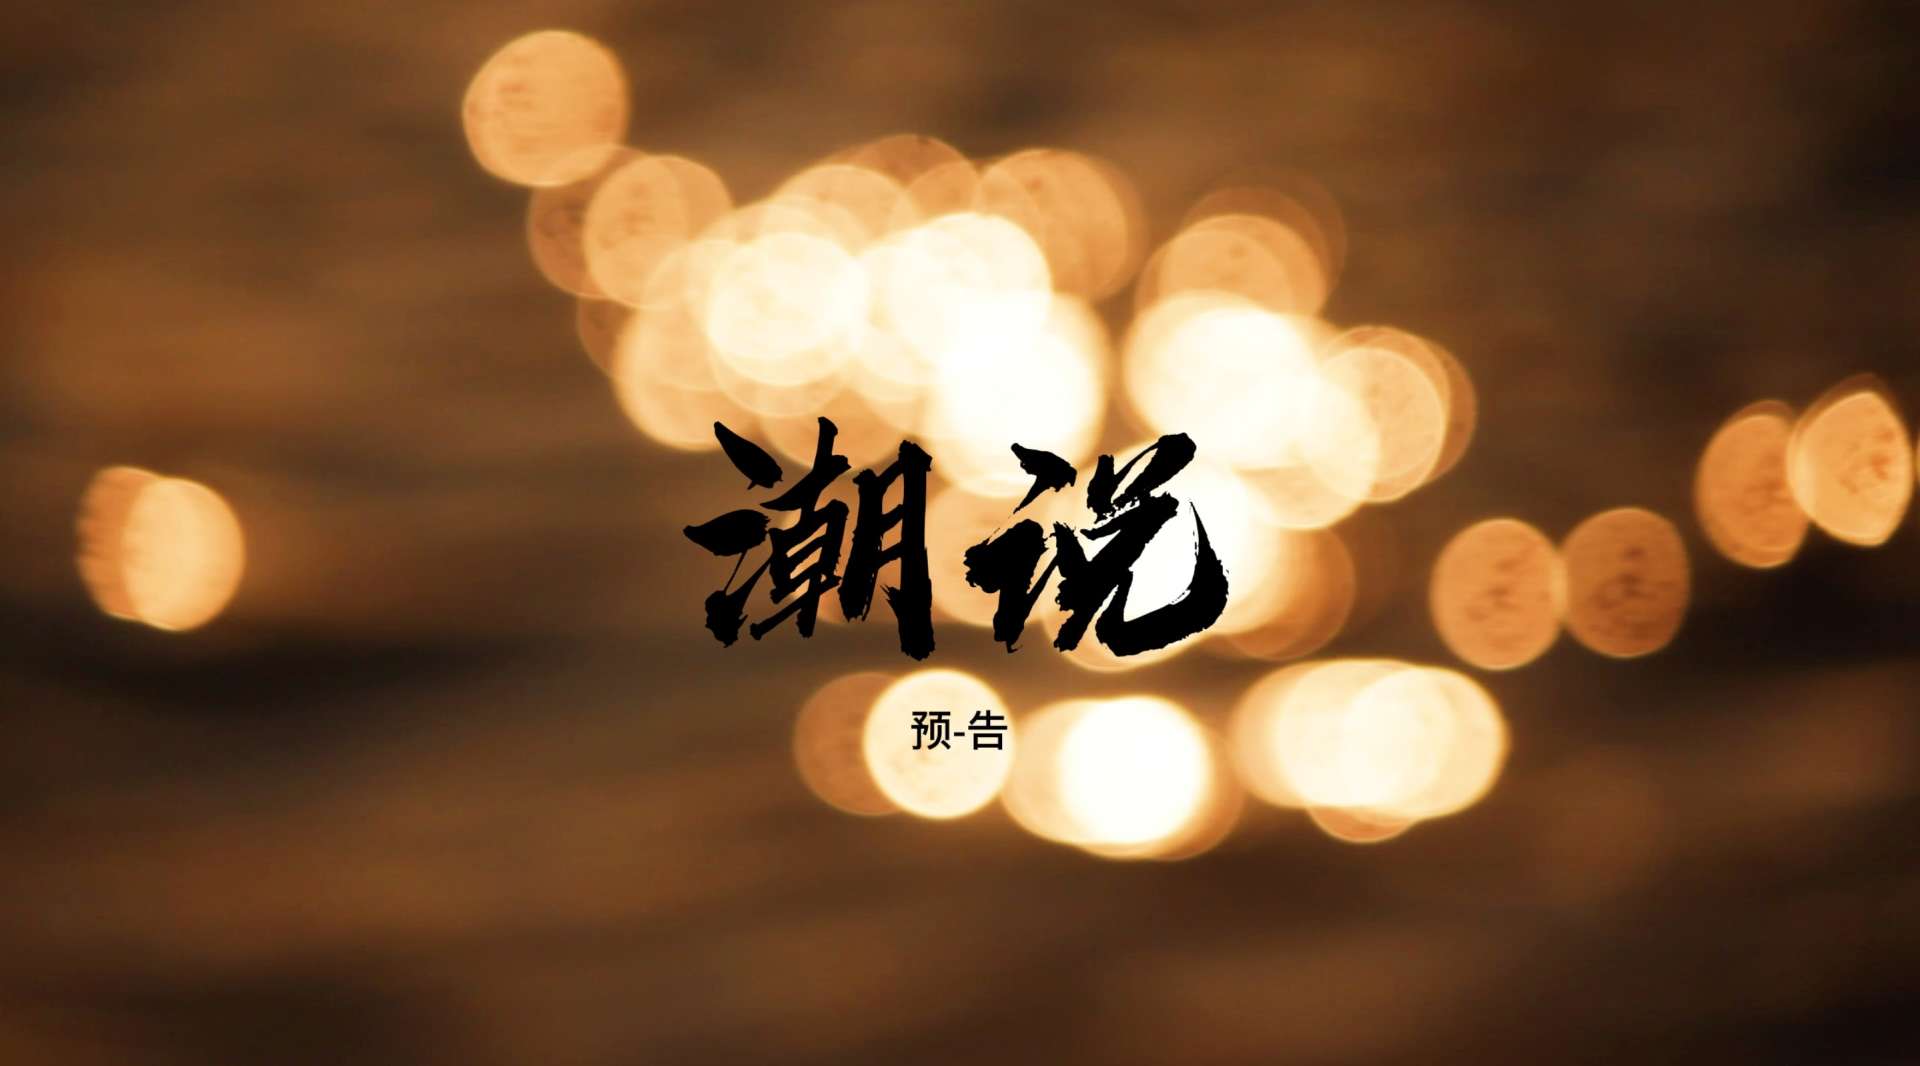 潮汕人文纪录片《潮说》预告——生活万岁，人间值得